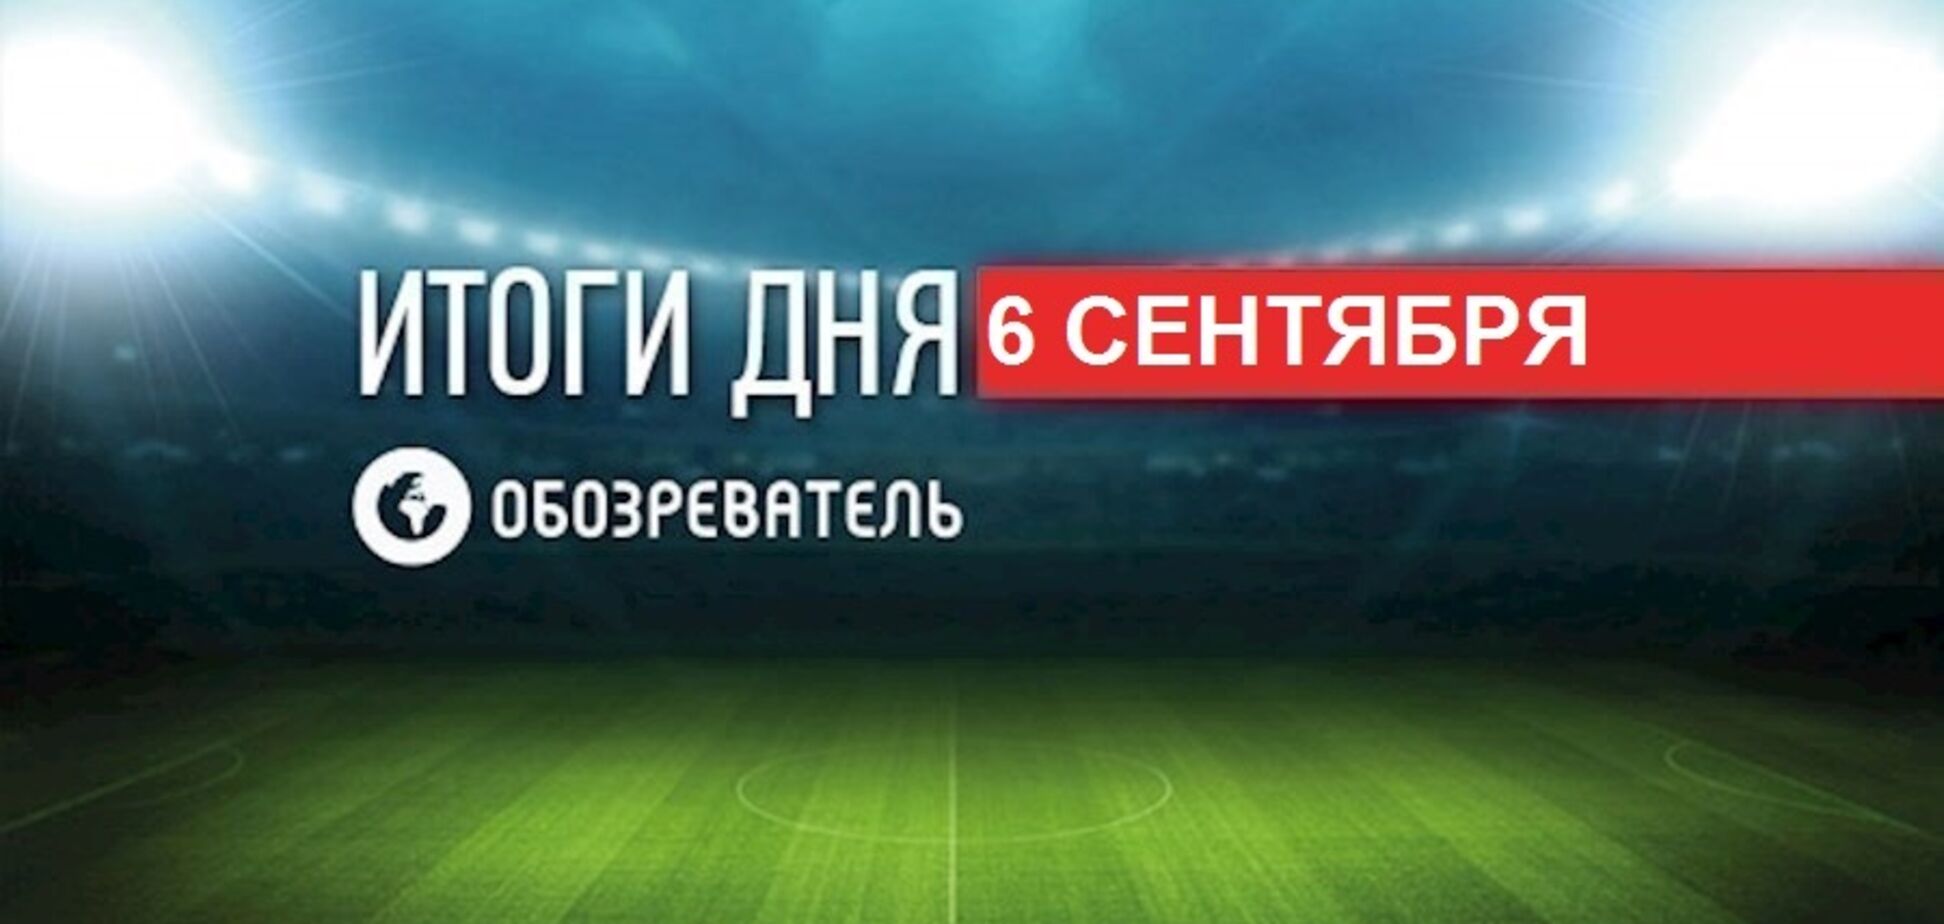 Шевченко повздорил с форвардом сборной Украины: спортивные итоги 6 сентября